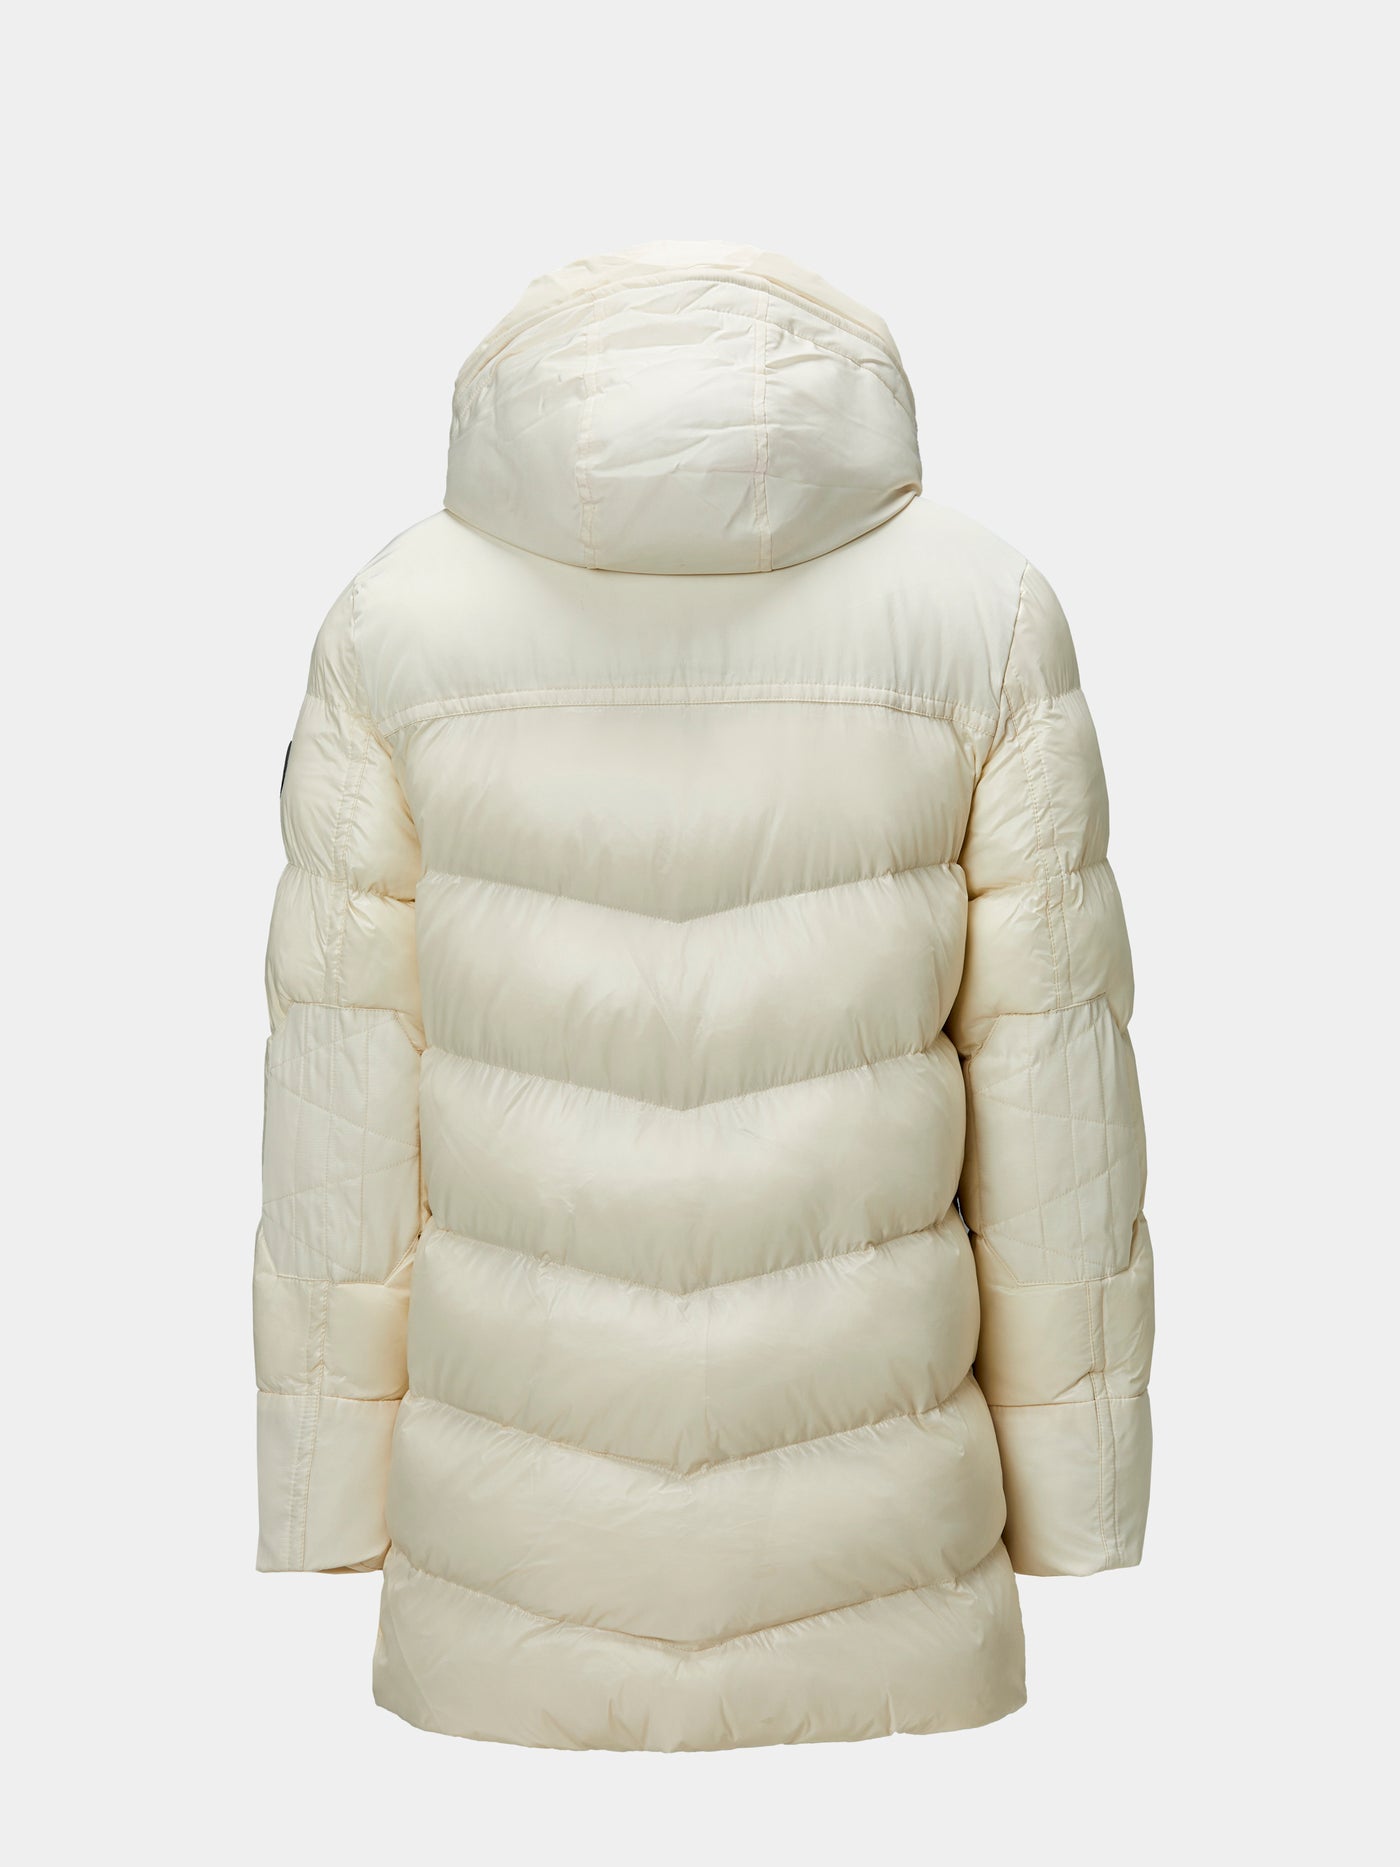 White Heated Jacket